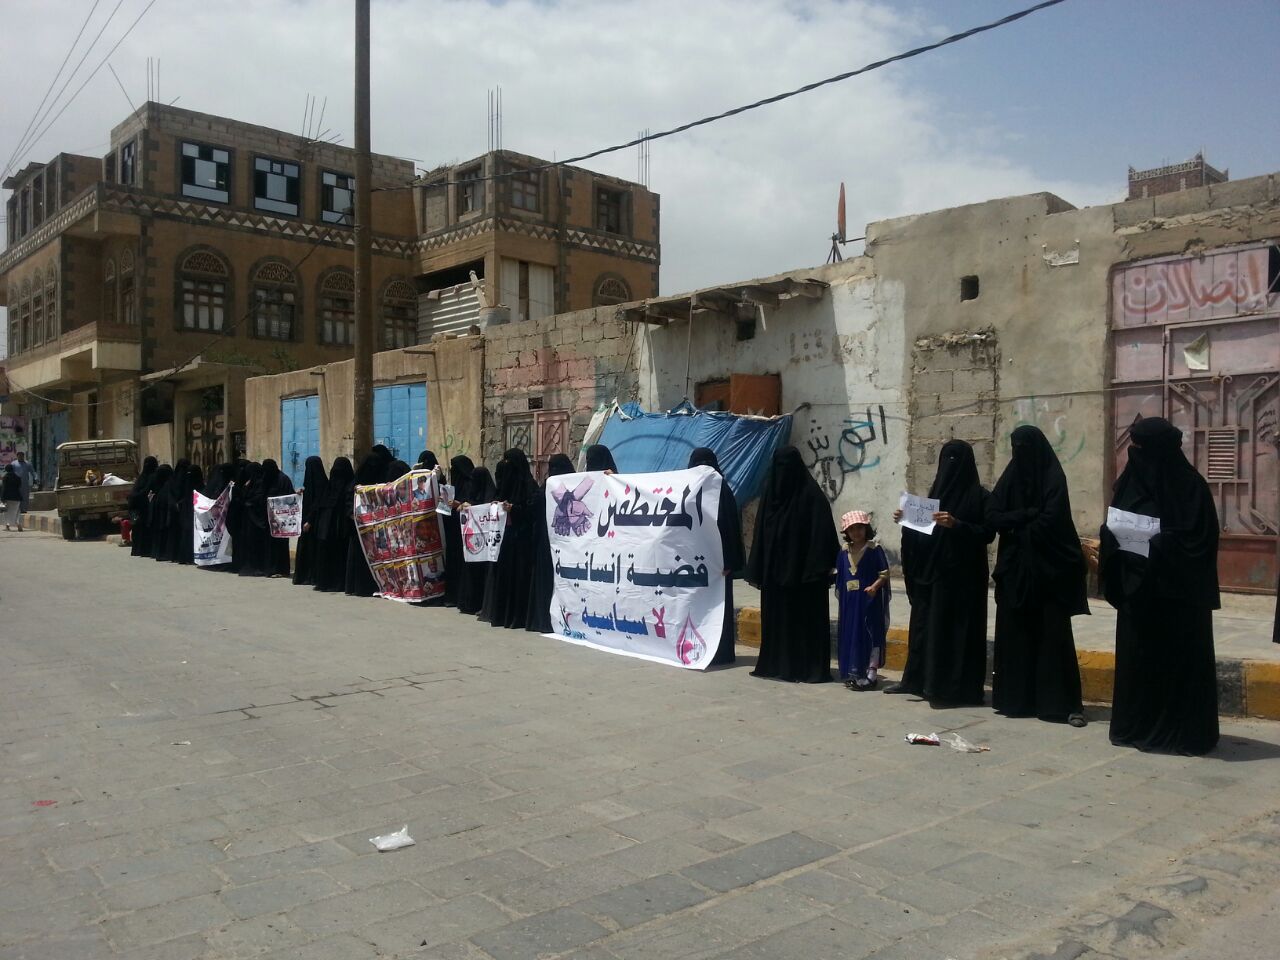 وقفة احتاجاية لأمهات وزوجات المعتقلين في سجون الحوثي بصنعاء